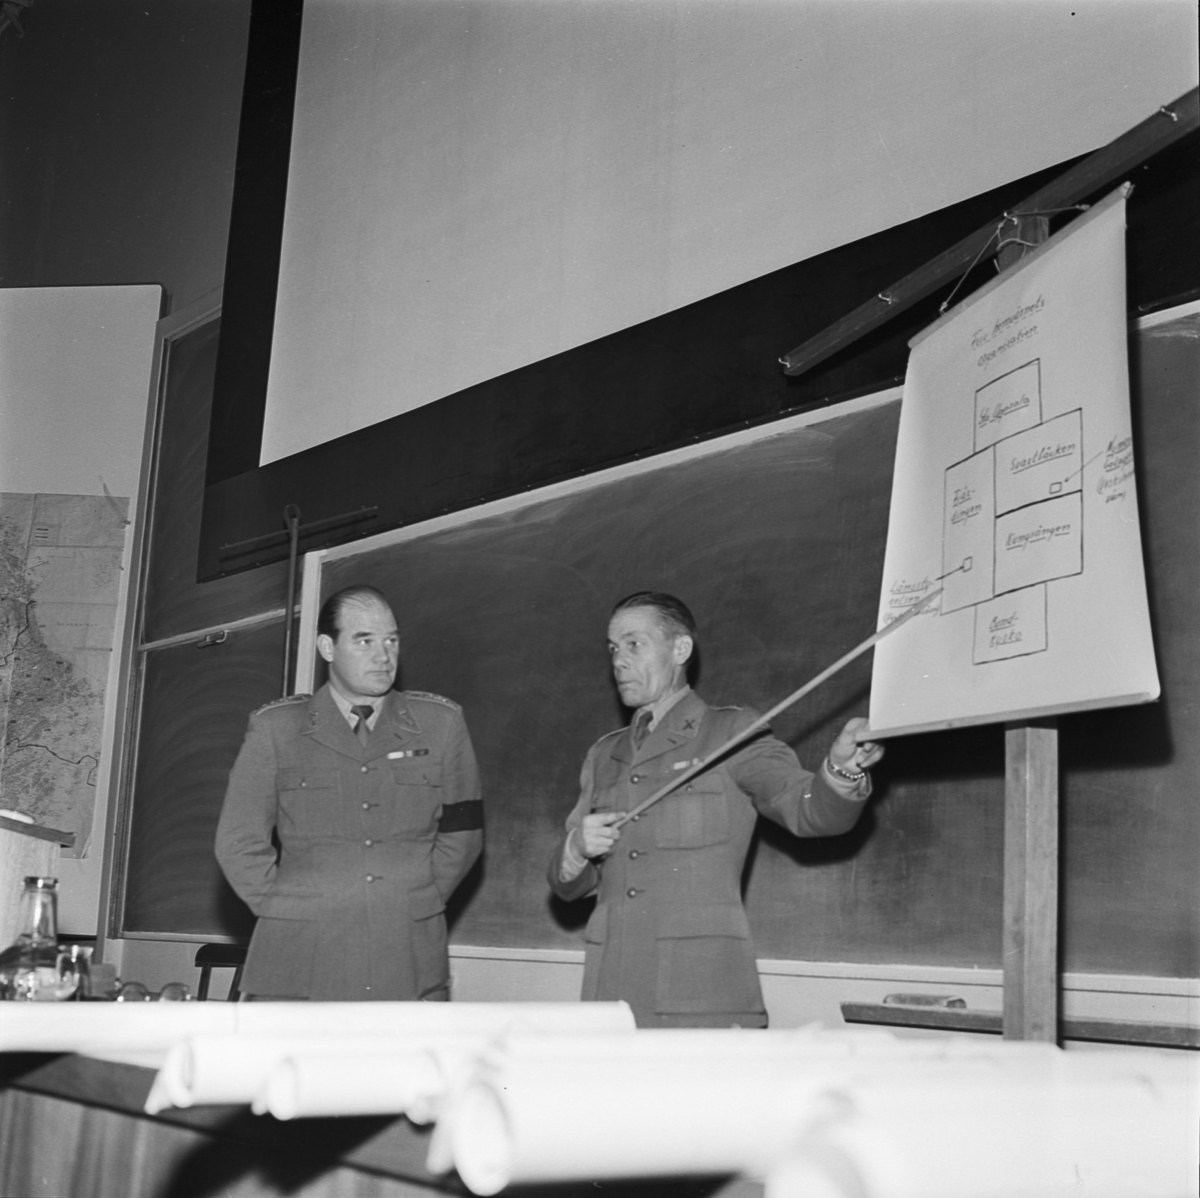 Civilförsvaret, kapten Pernler och överste Eklund i sal X på universitetet, Uppsala 1956